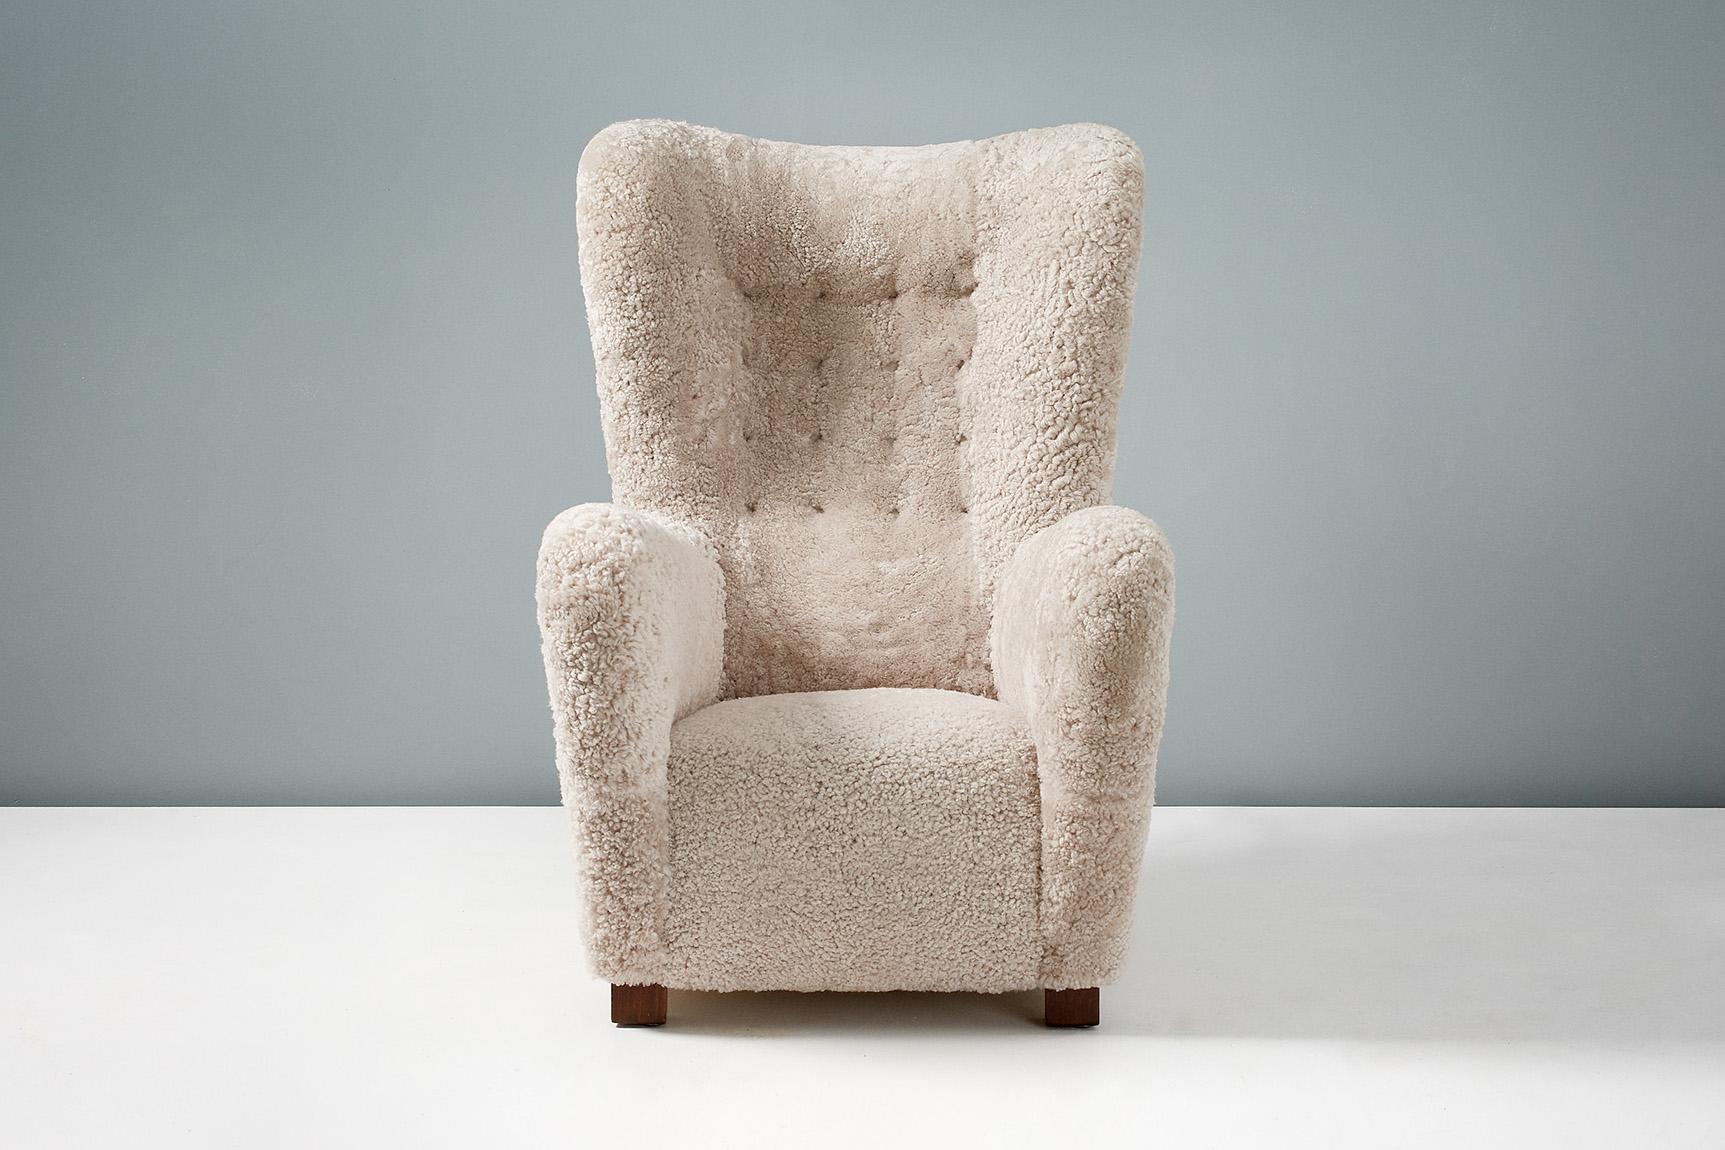 Chaise à oreilles Fritz Hansen, modèle 1672

Un grand fauteuil à oreilles produit au Danemark dans les années 1940 par les fabricants Fritz Hansen. Les pieds carrés en hêtre ont été teintés et huilés et la chaise a été entièrement reconditionnée